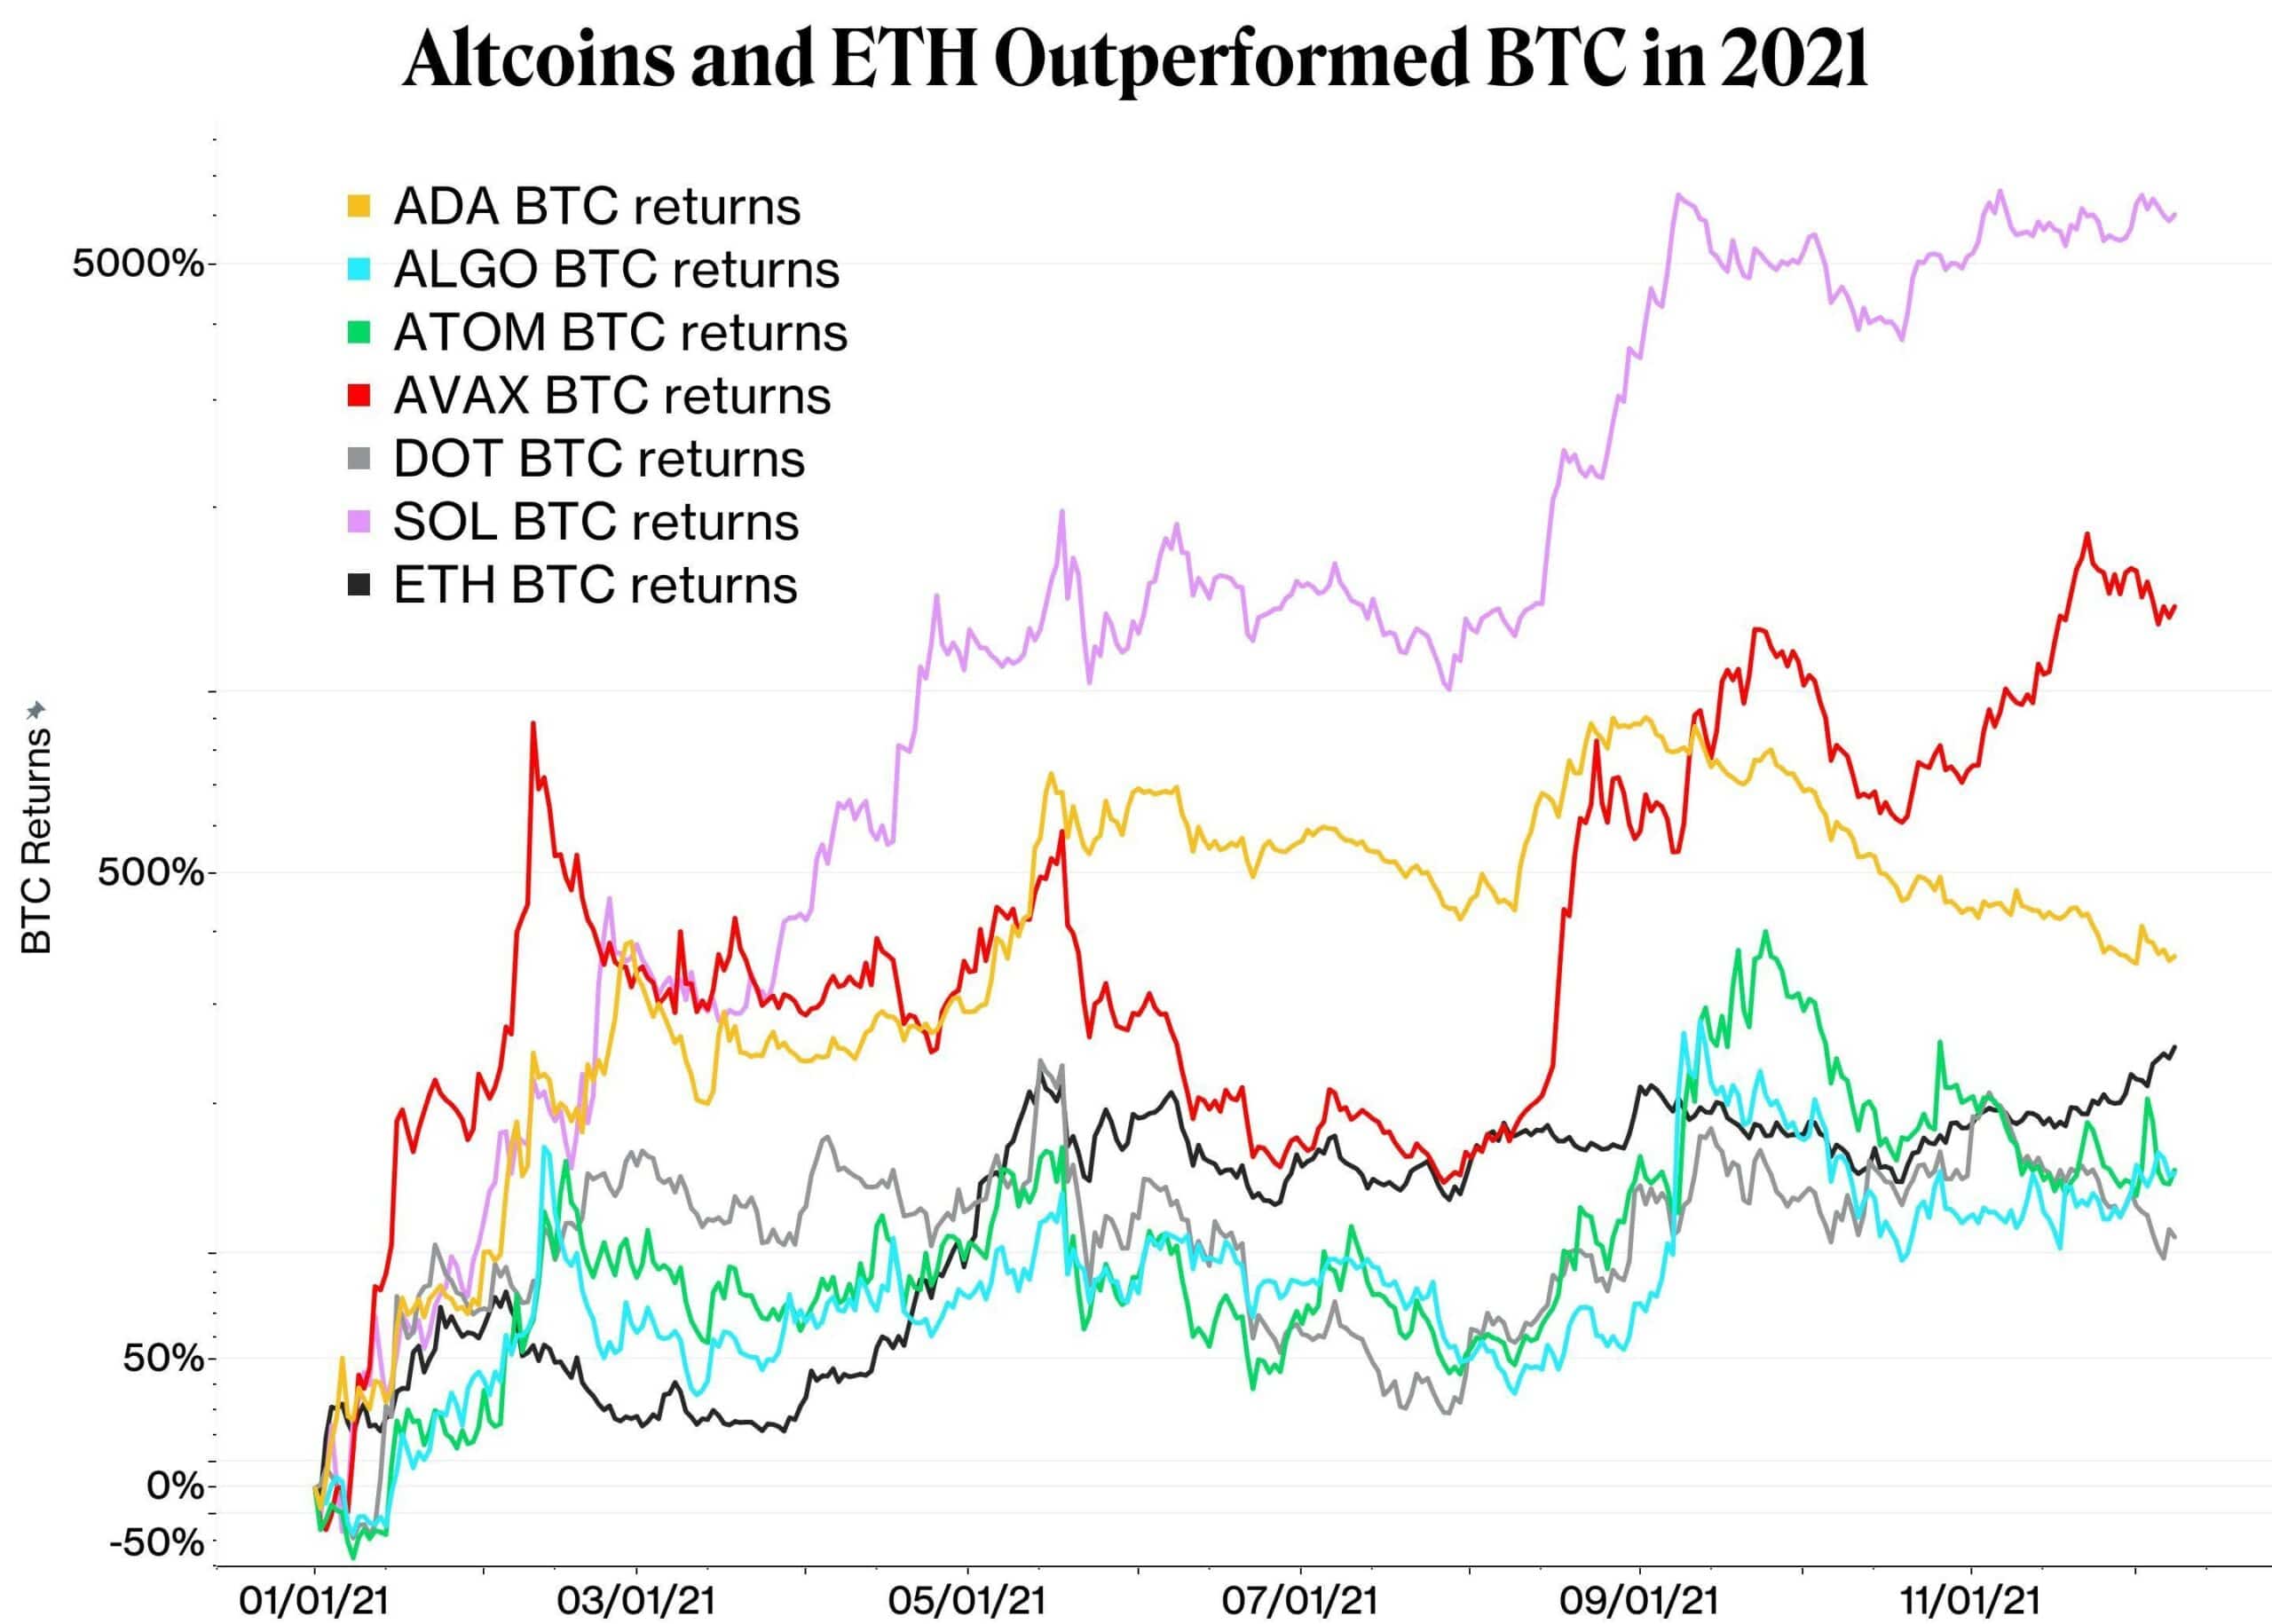 Altcoins und Ether seit Jahresbeginn, in Bitcoin bewertet (logarithmische Skala)